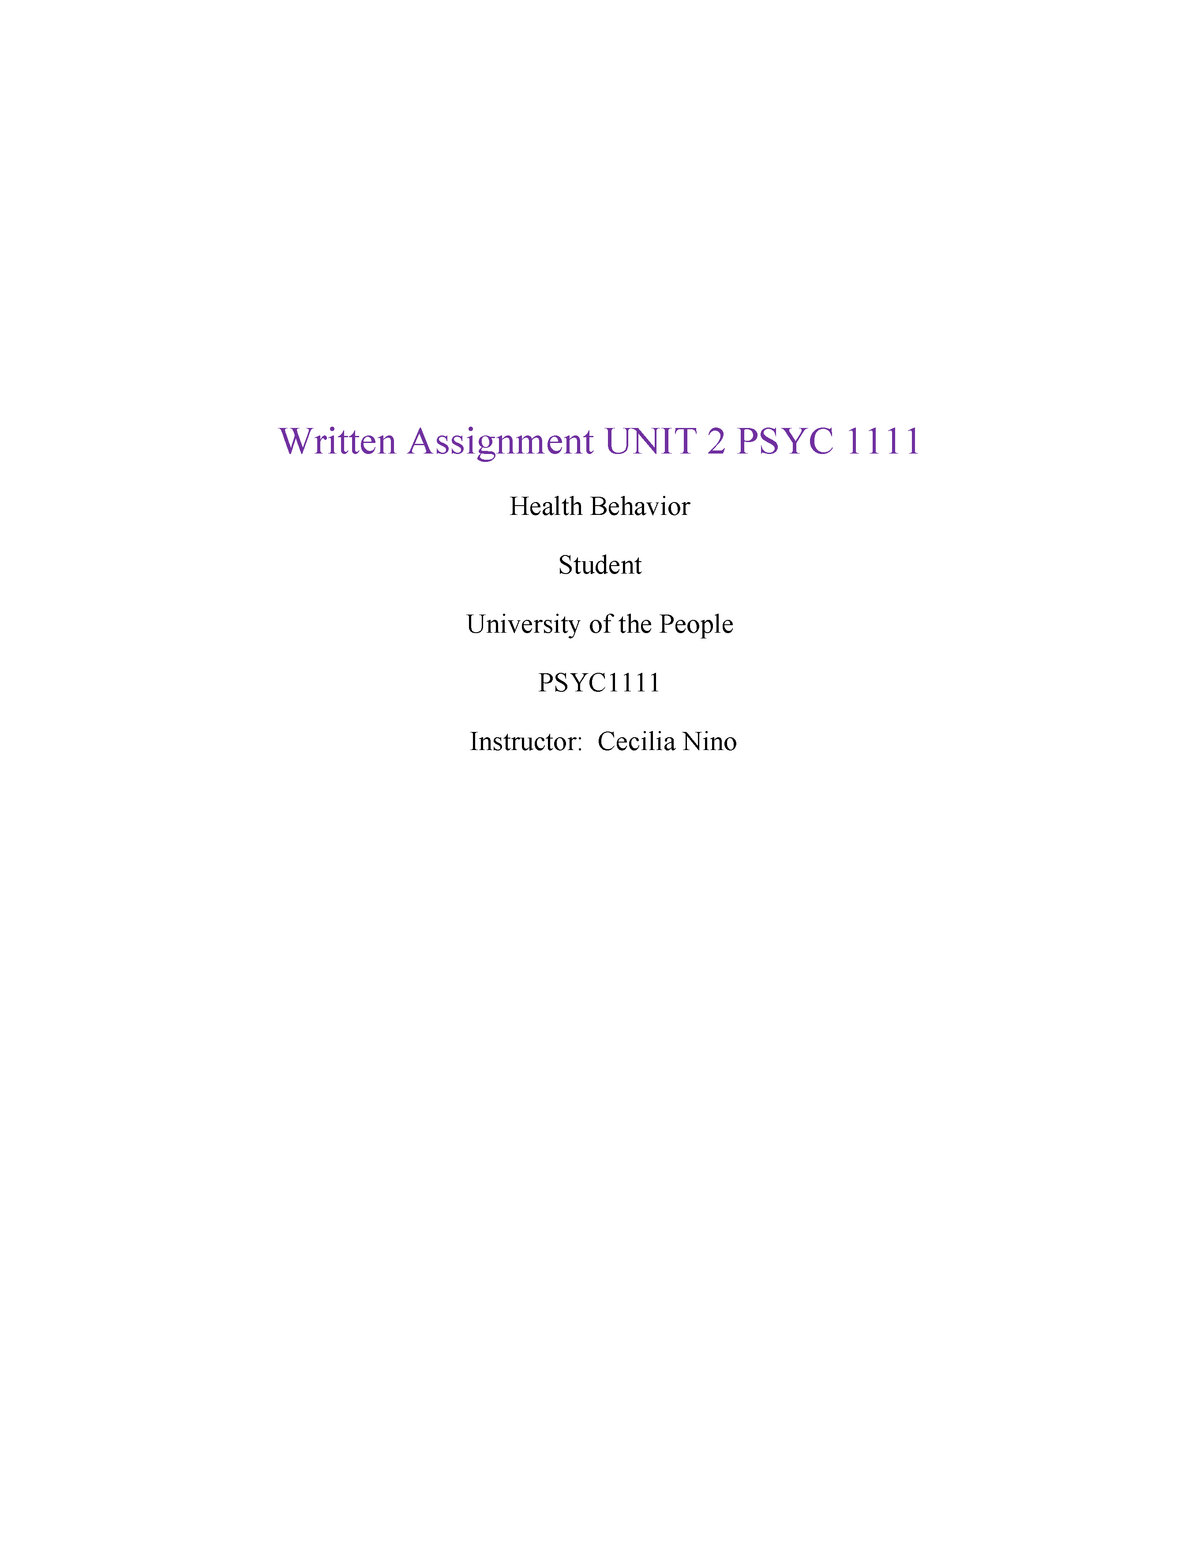 psyc 1111 written assignment unit 2